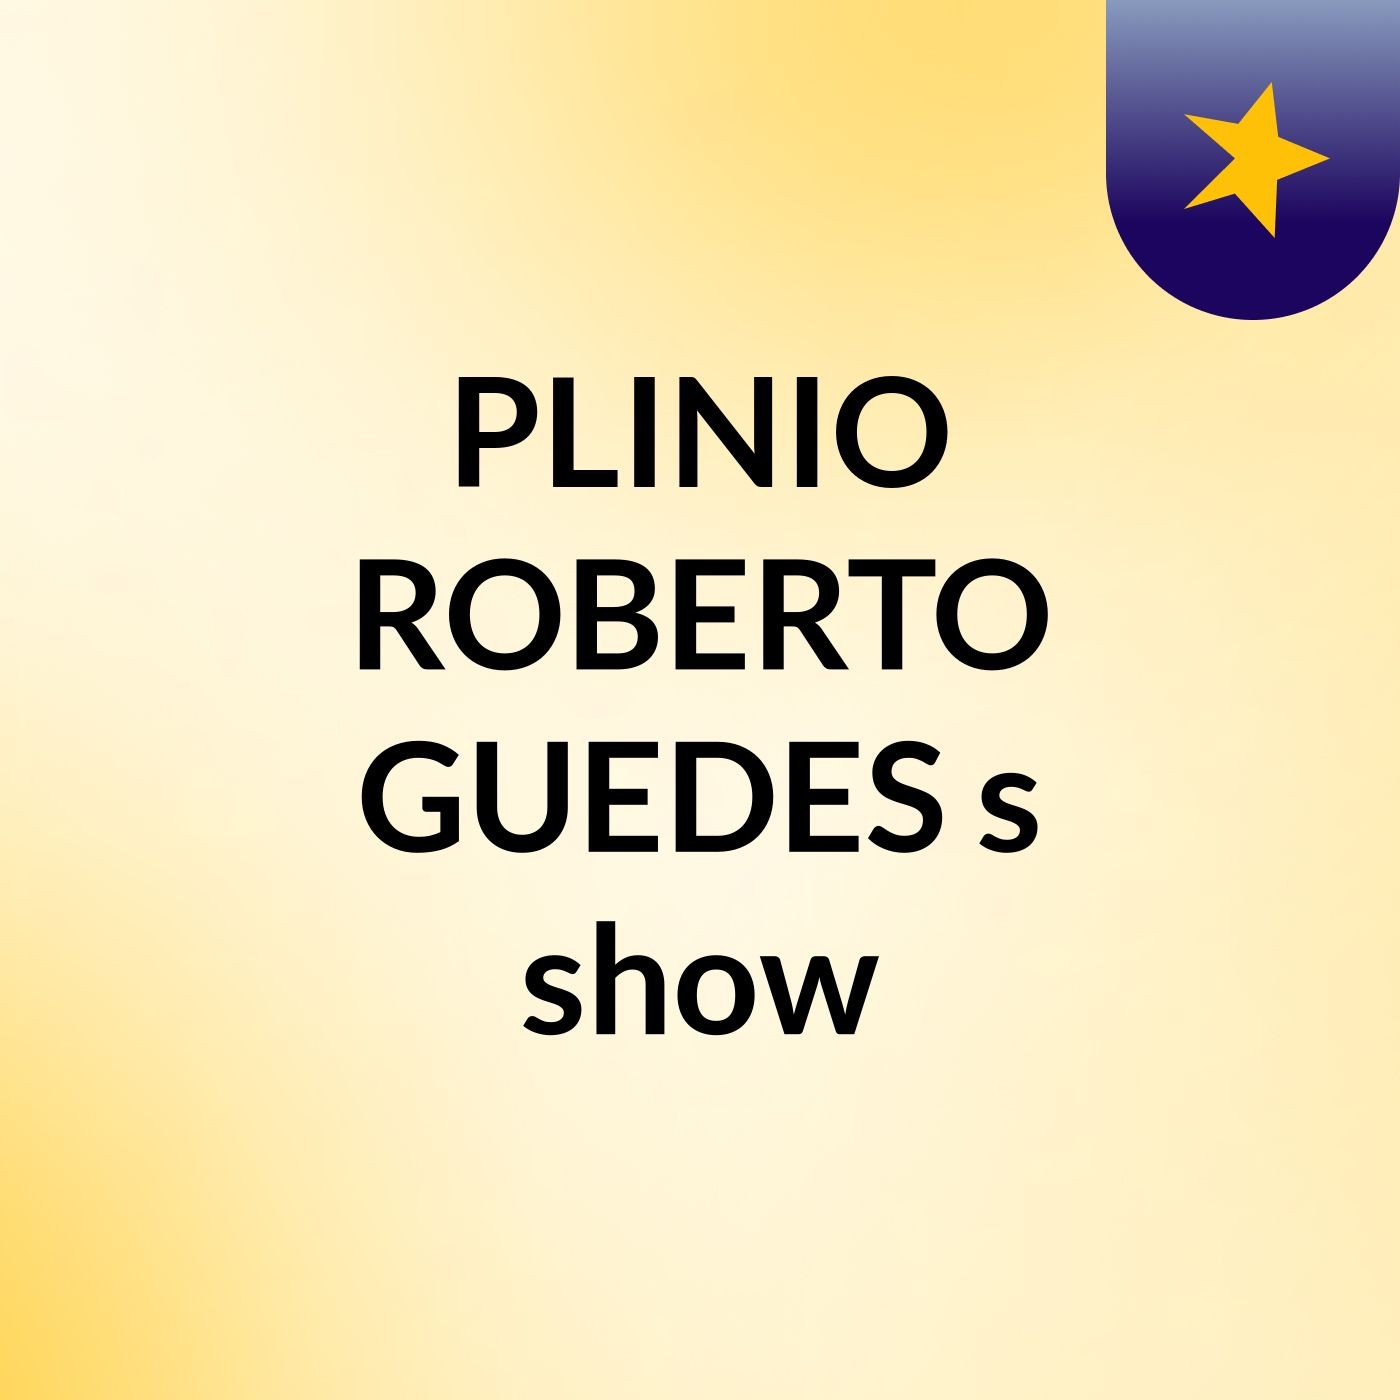 PLINIO ROBERTO GUEDES's show